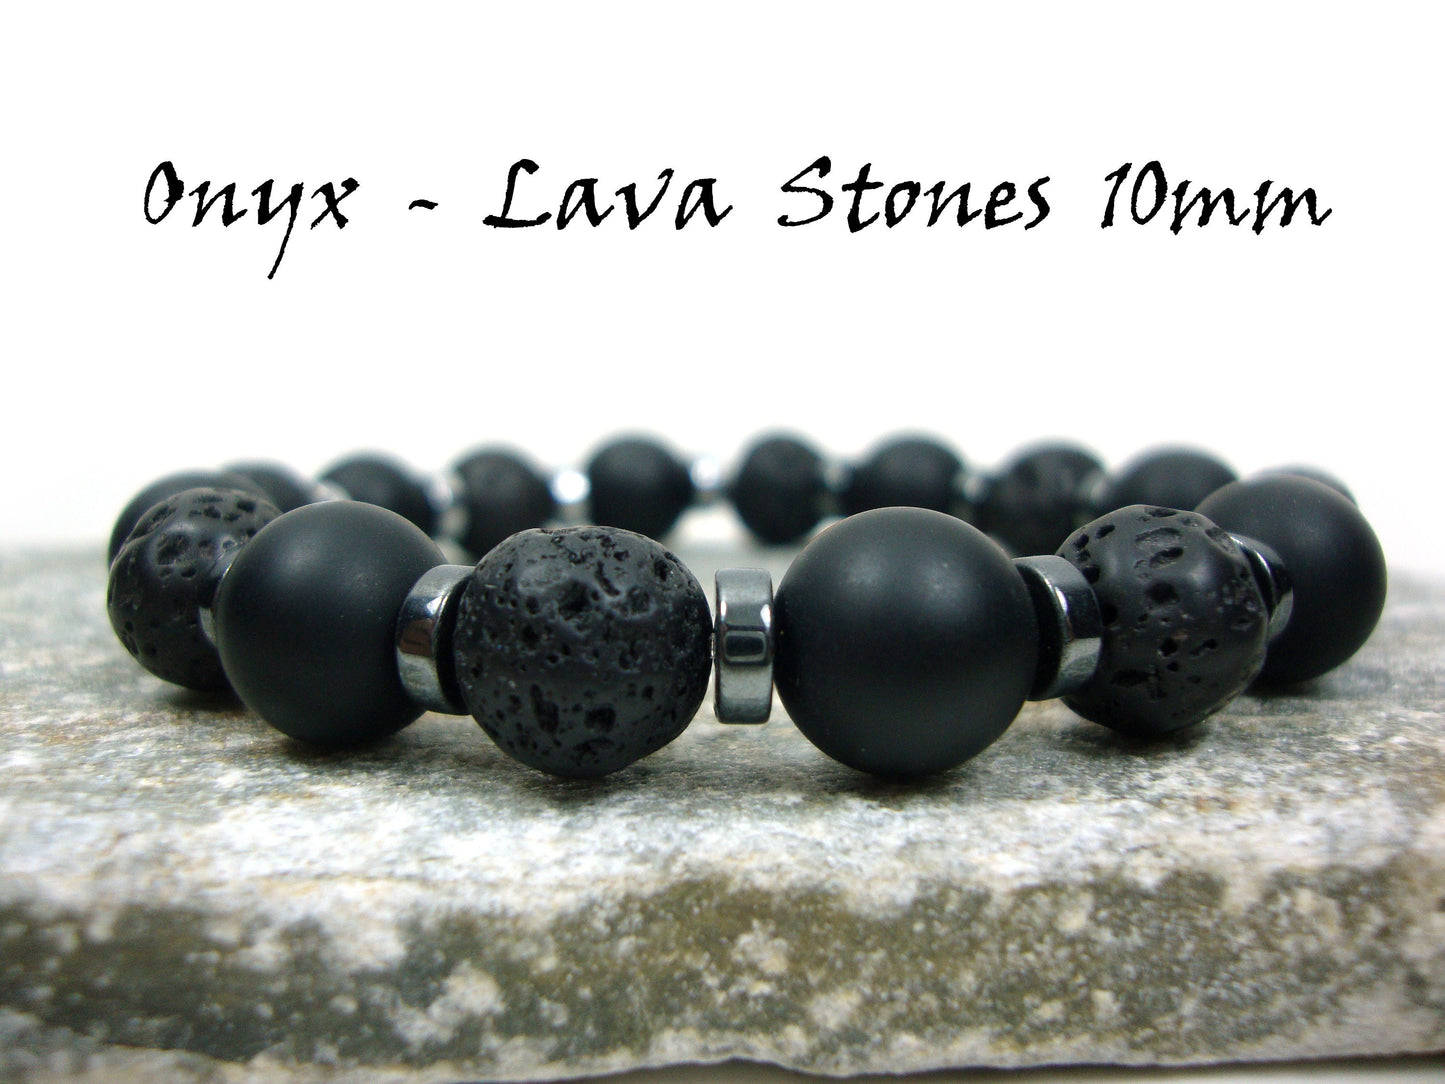 Pierres de lave noires grecques volcaniques naturelles de Santorin, pierres d'onyx noir mat 10 mm, bracelet de pierres de couleur argent hématite, bracelet de lave